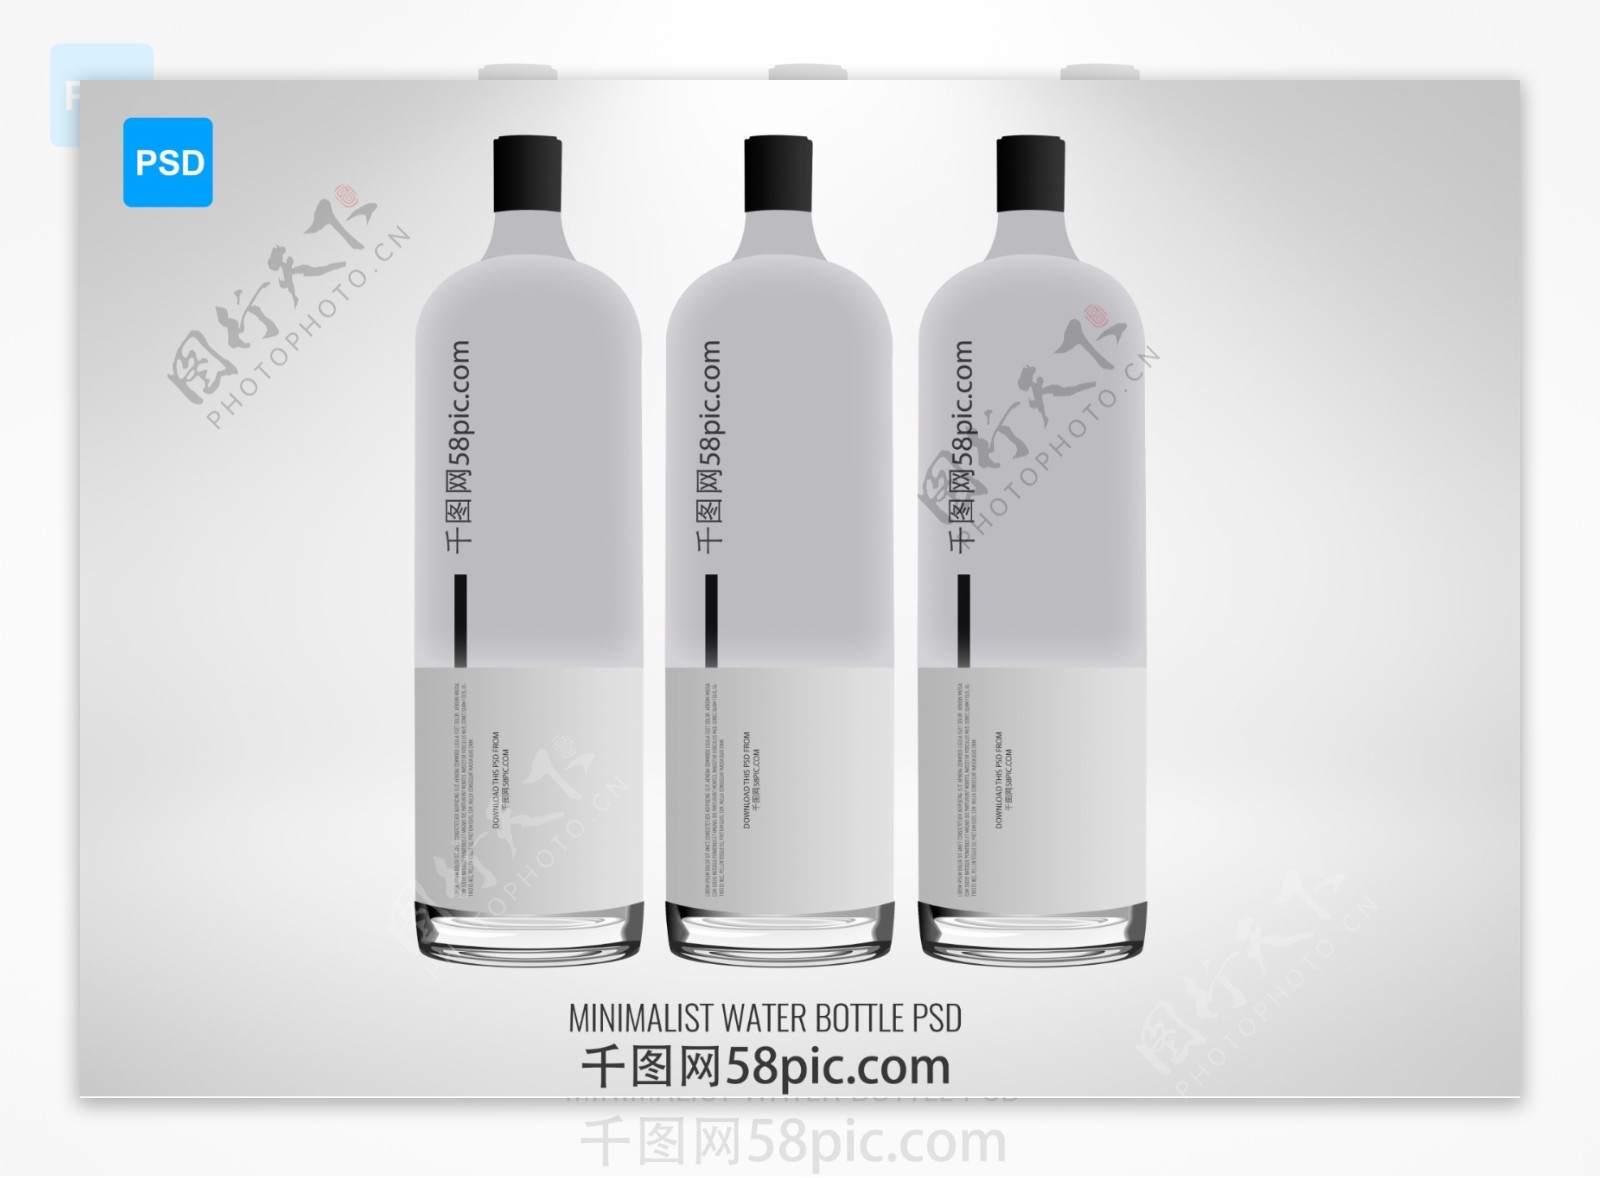 酒瓶水杯瓶装产品外包装样机素材展示